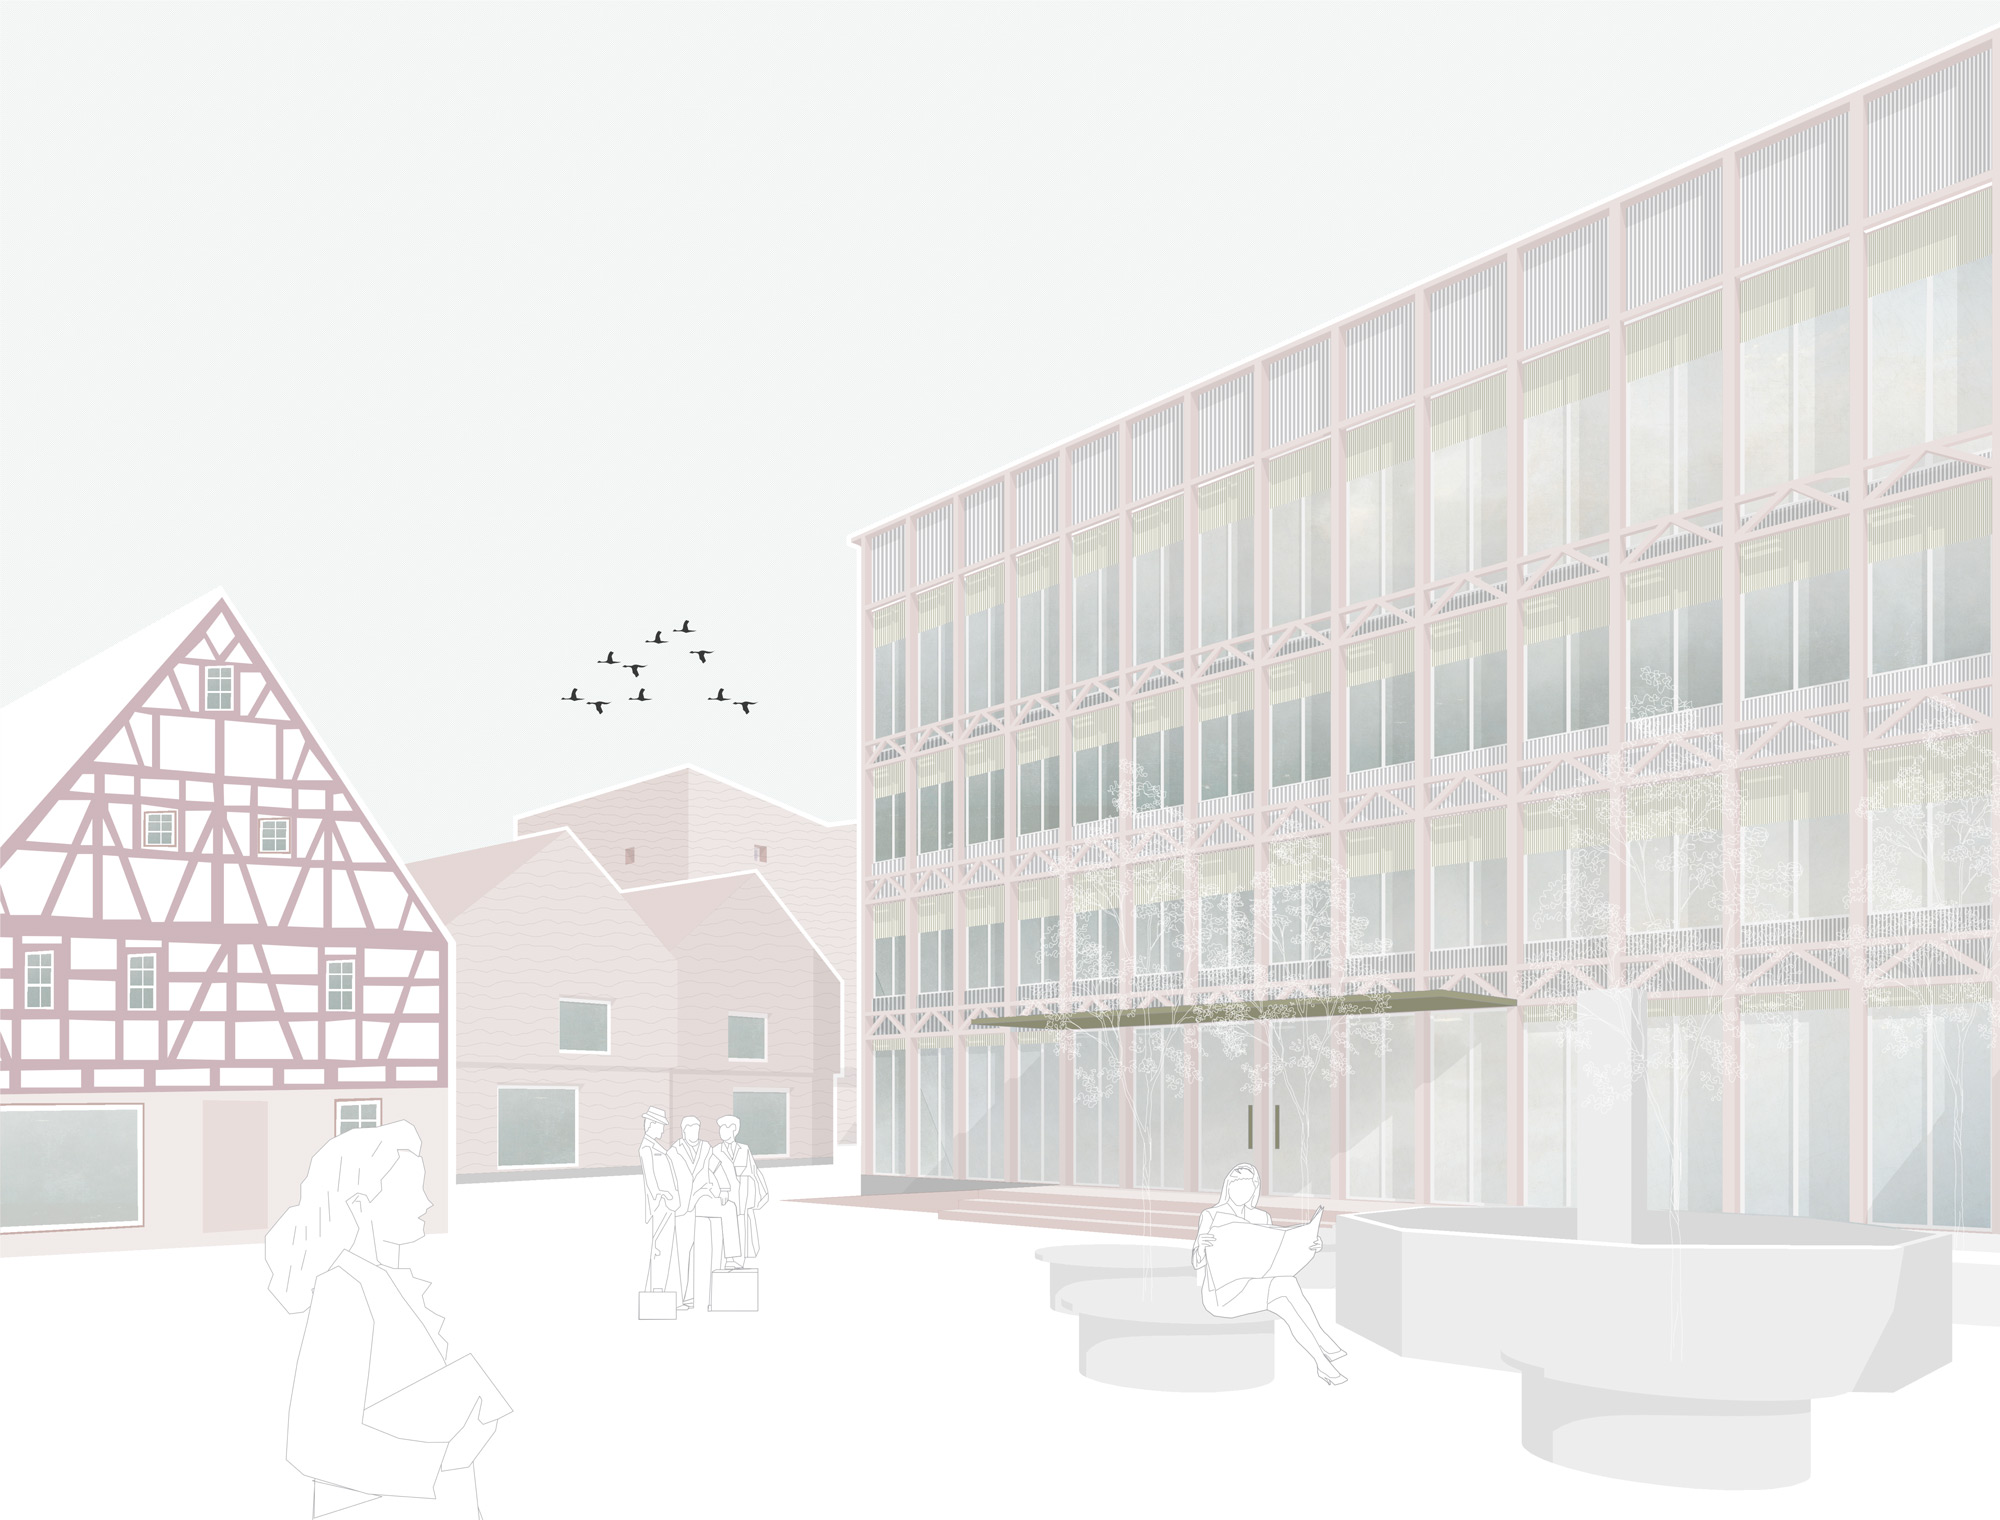 Wettbewerb | Neubau Rathaus und Gestaltung Murrterrassen | Steinheim